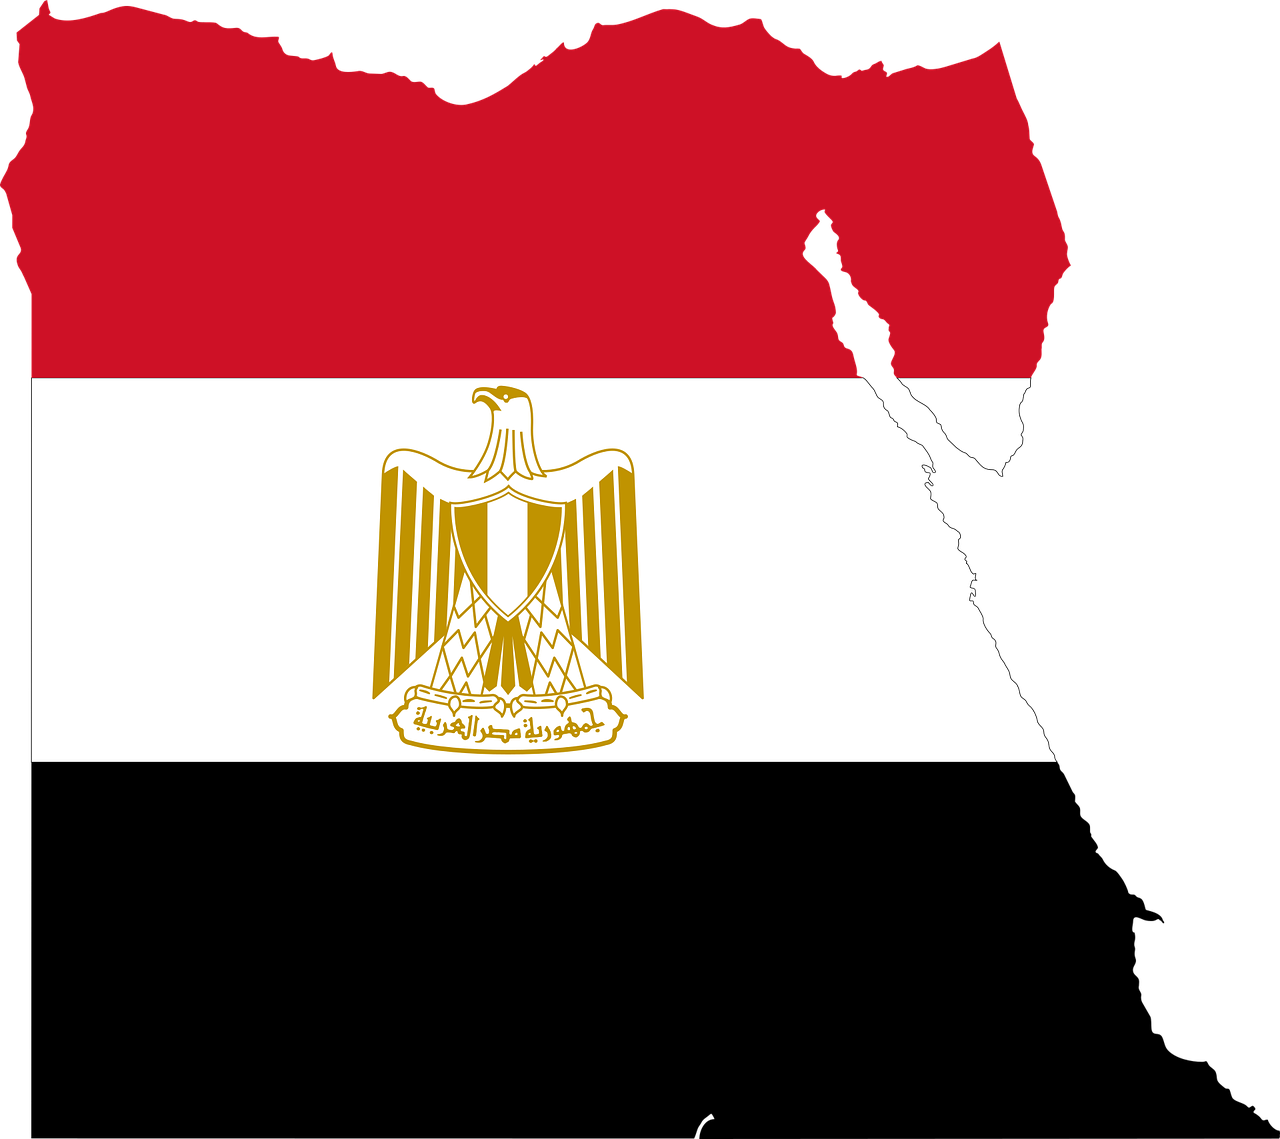 La iniciativa Vida Decente de Egipto costará casi 400.000 millones de euros